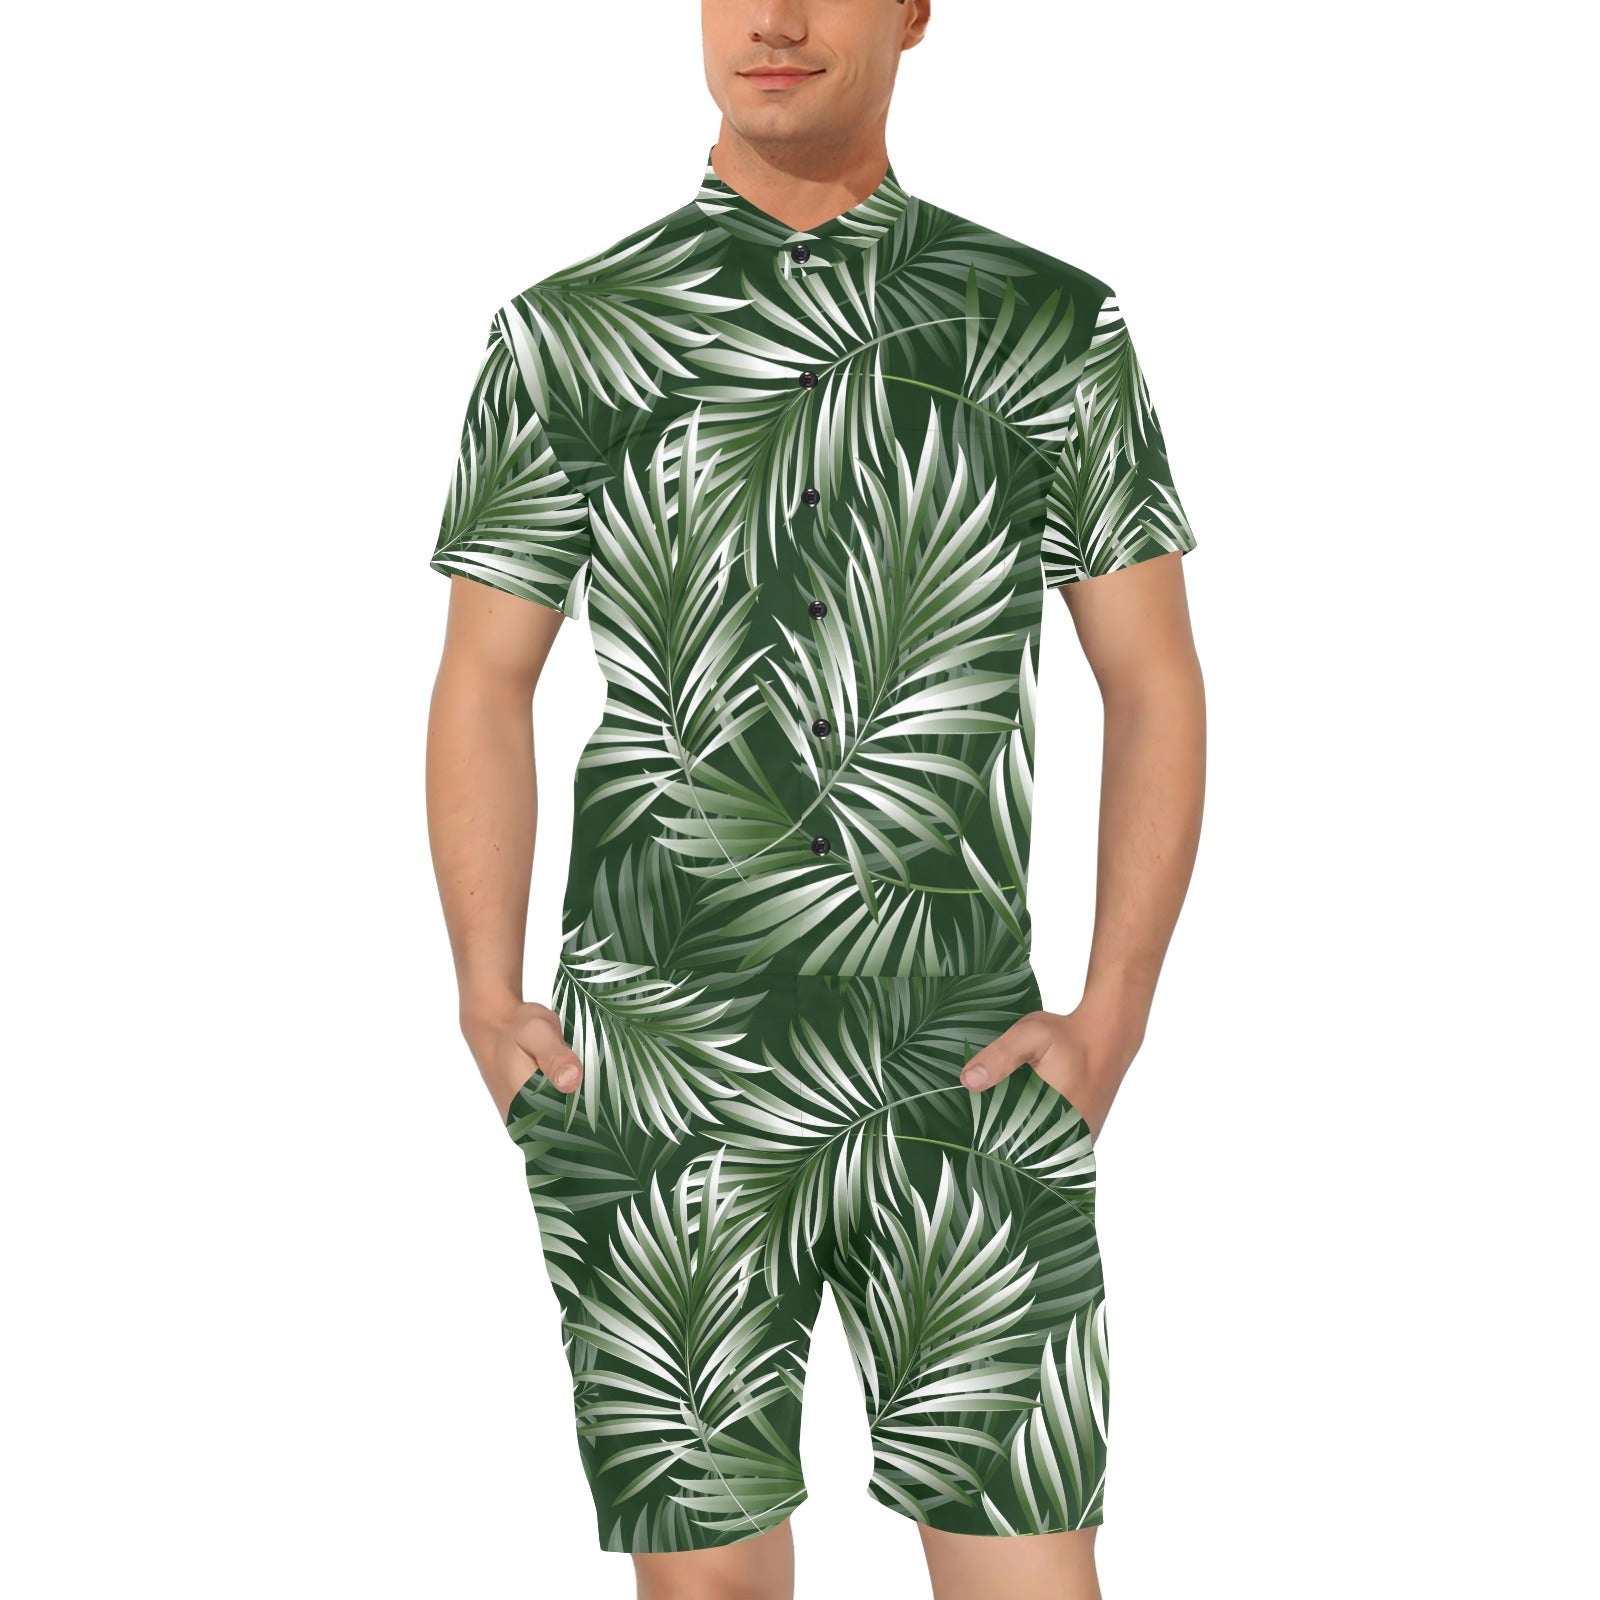 White Green Tropical Palm Leaves Men's Romper